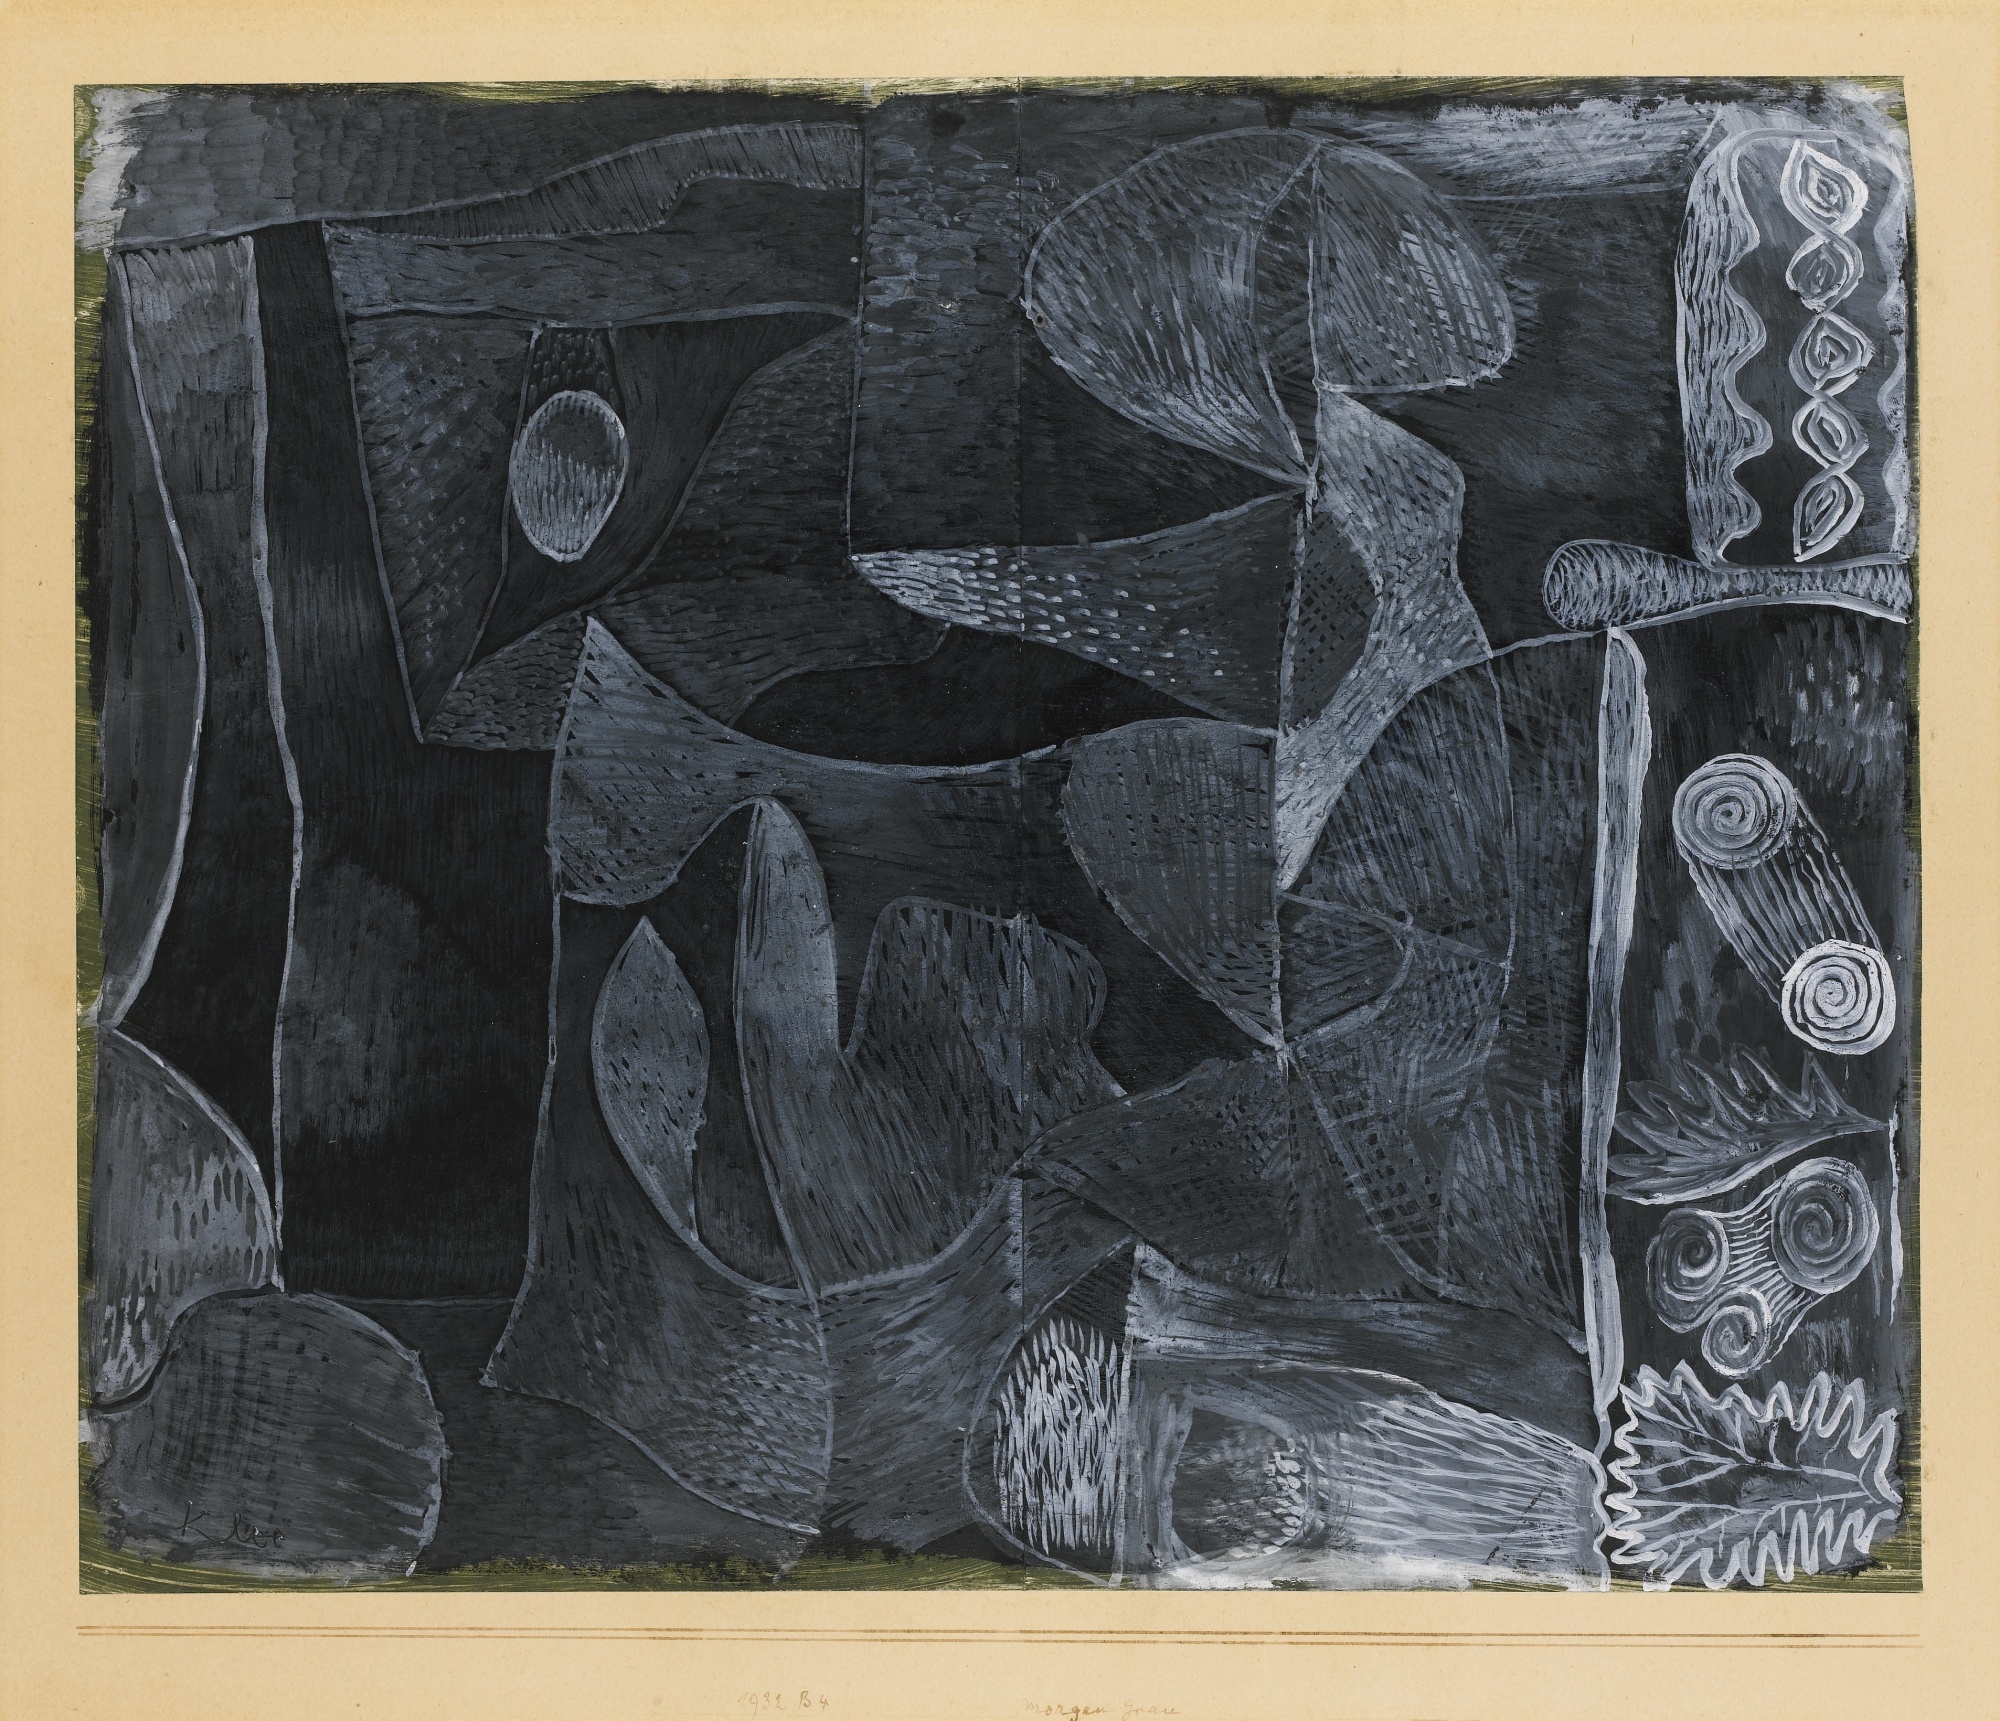 MORGENGRAU (MORNING GREY) by Paul Klee, 1932